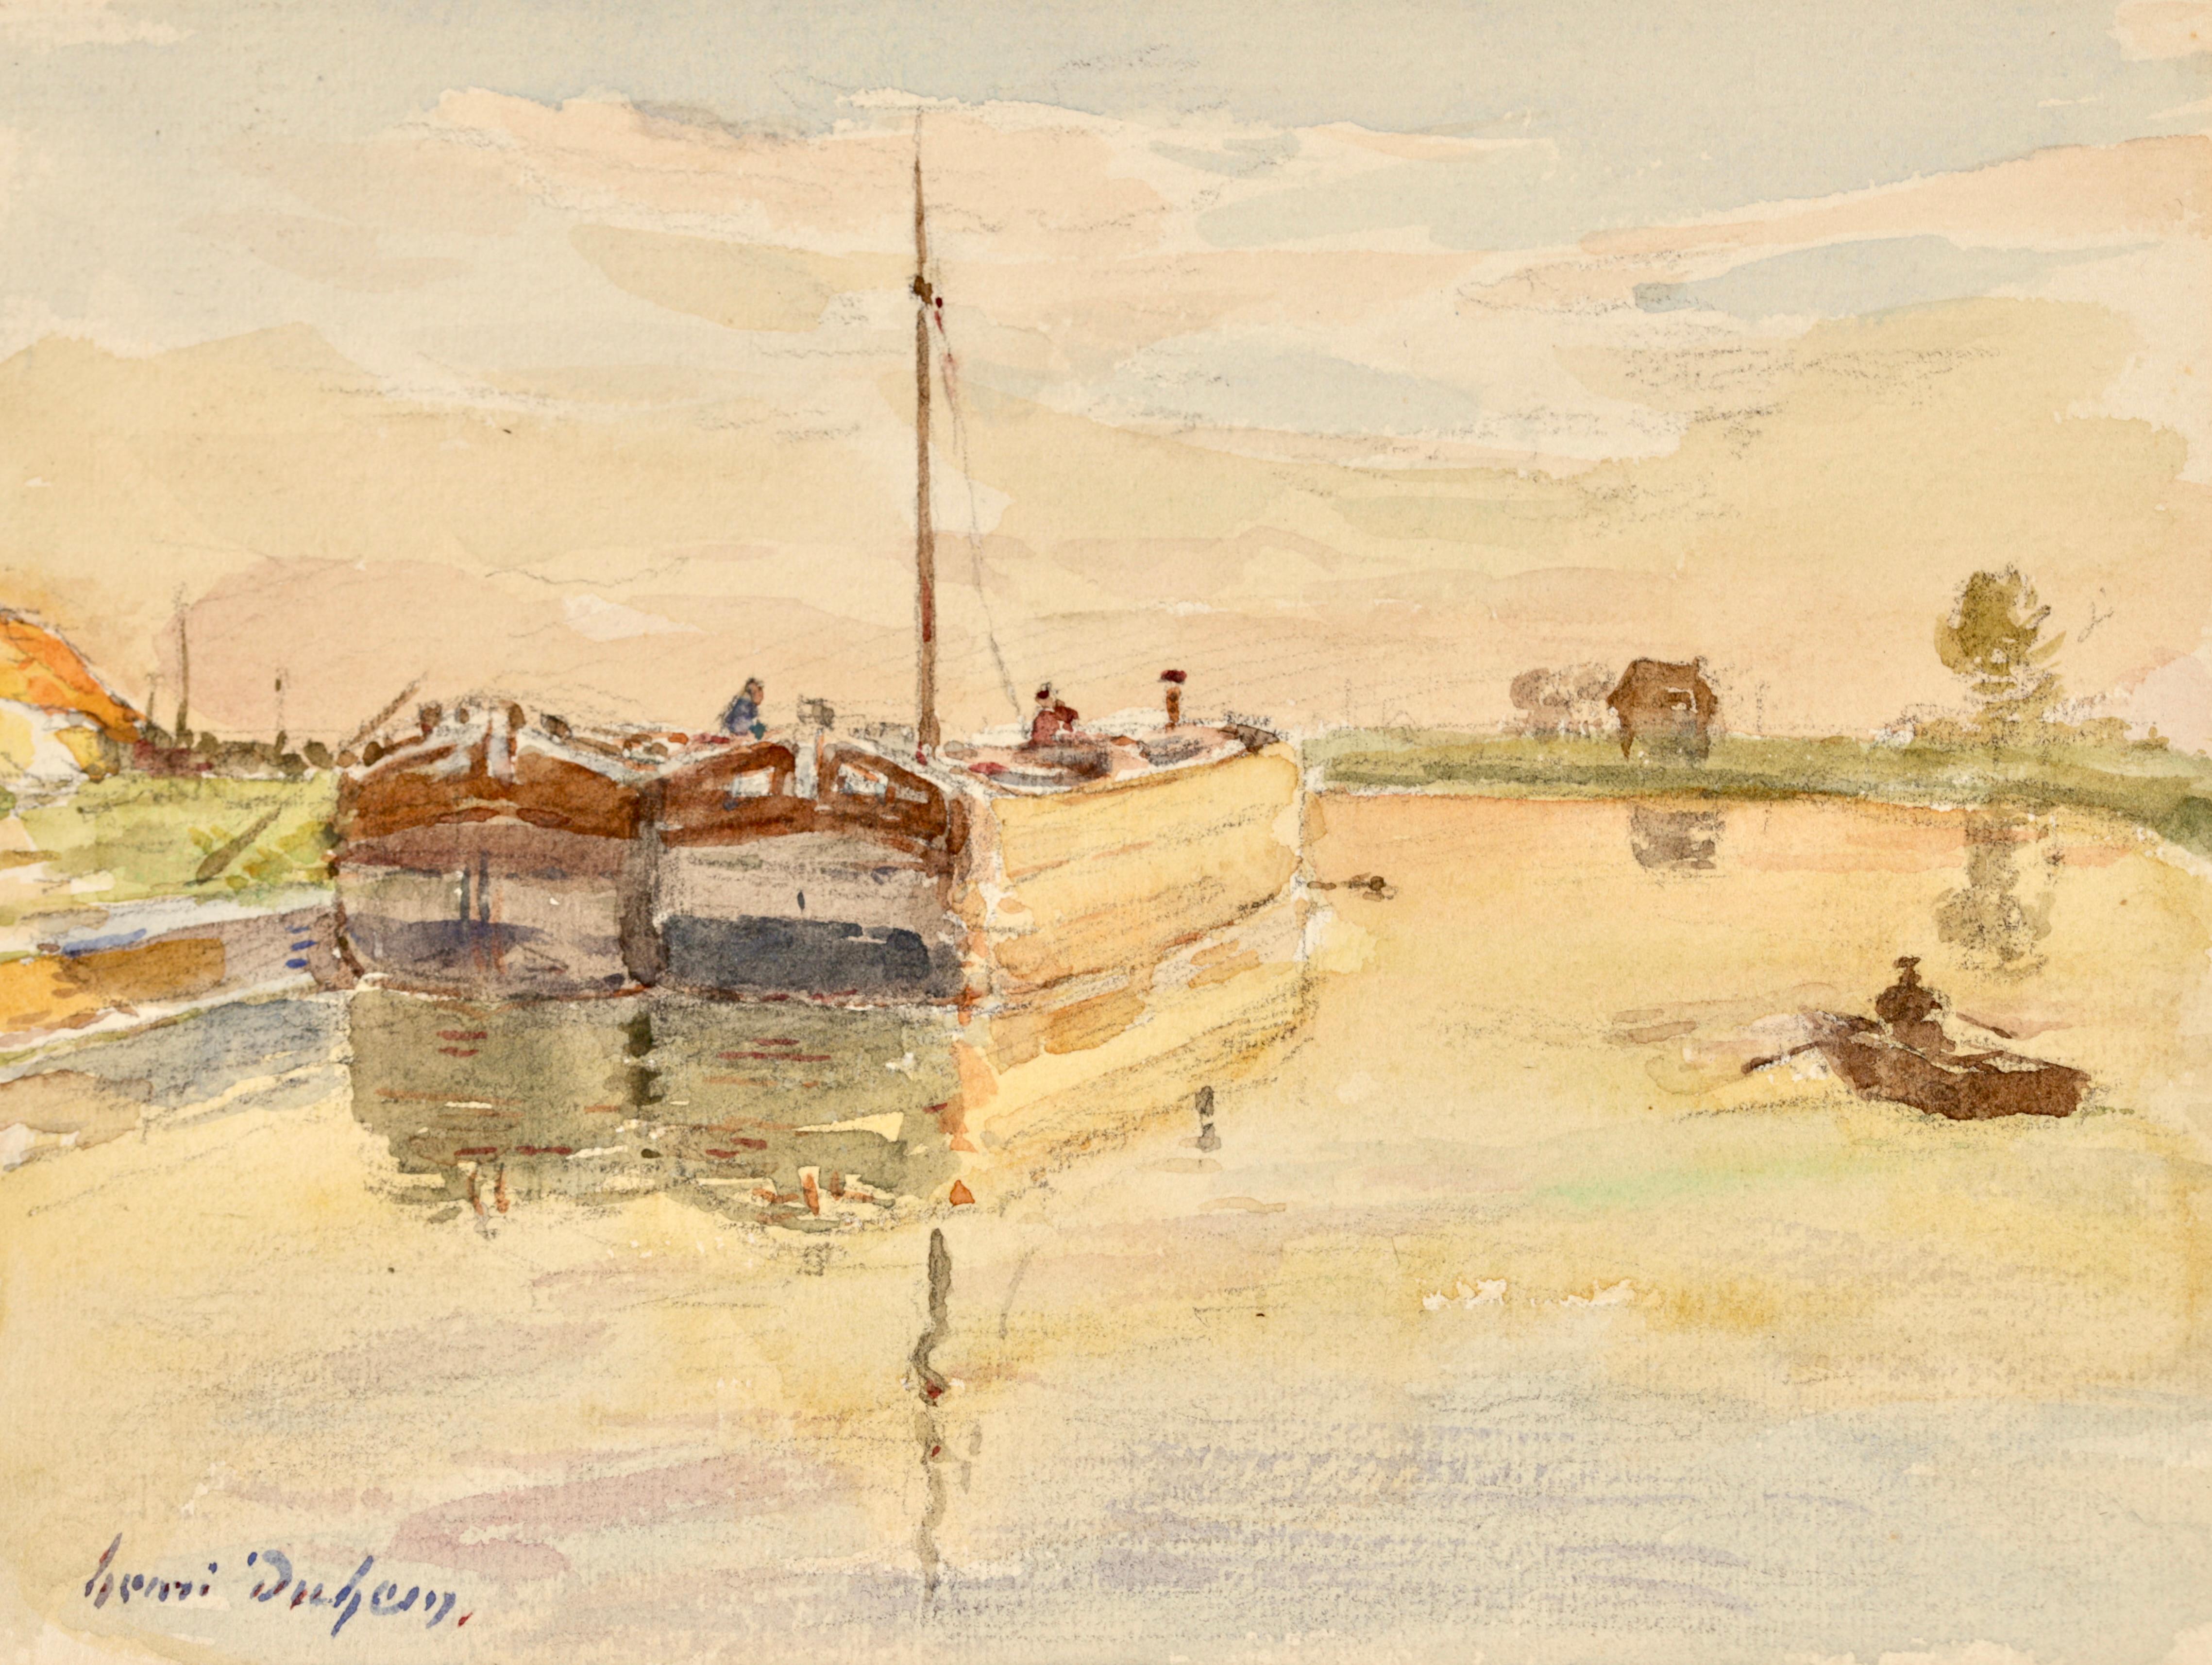 Aquarelle impressionniste signée, personnages dans un paysage de rivière, sur papier, vers 1920, par Henri Duhem. Cette belle pièce représente des hommes travaillant sur des barges sur un canal à Douai alors que le soleil se couche en laissant une